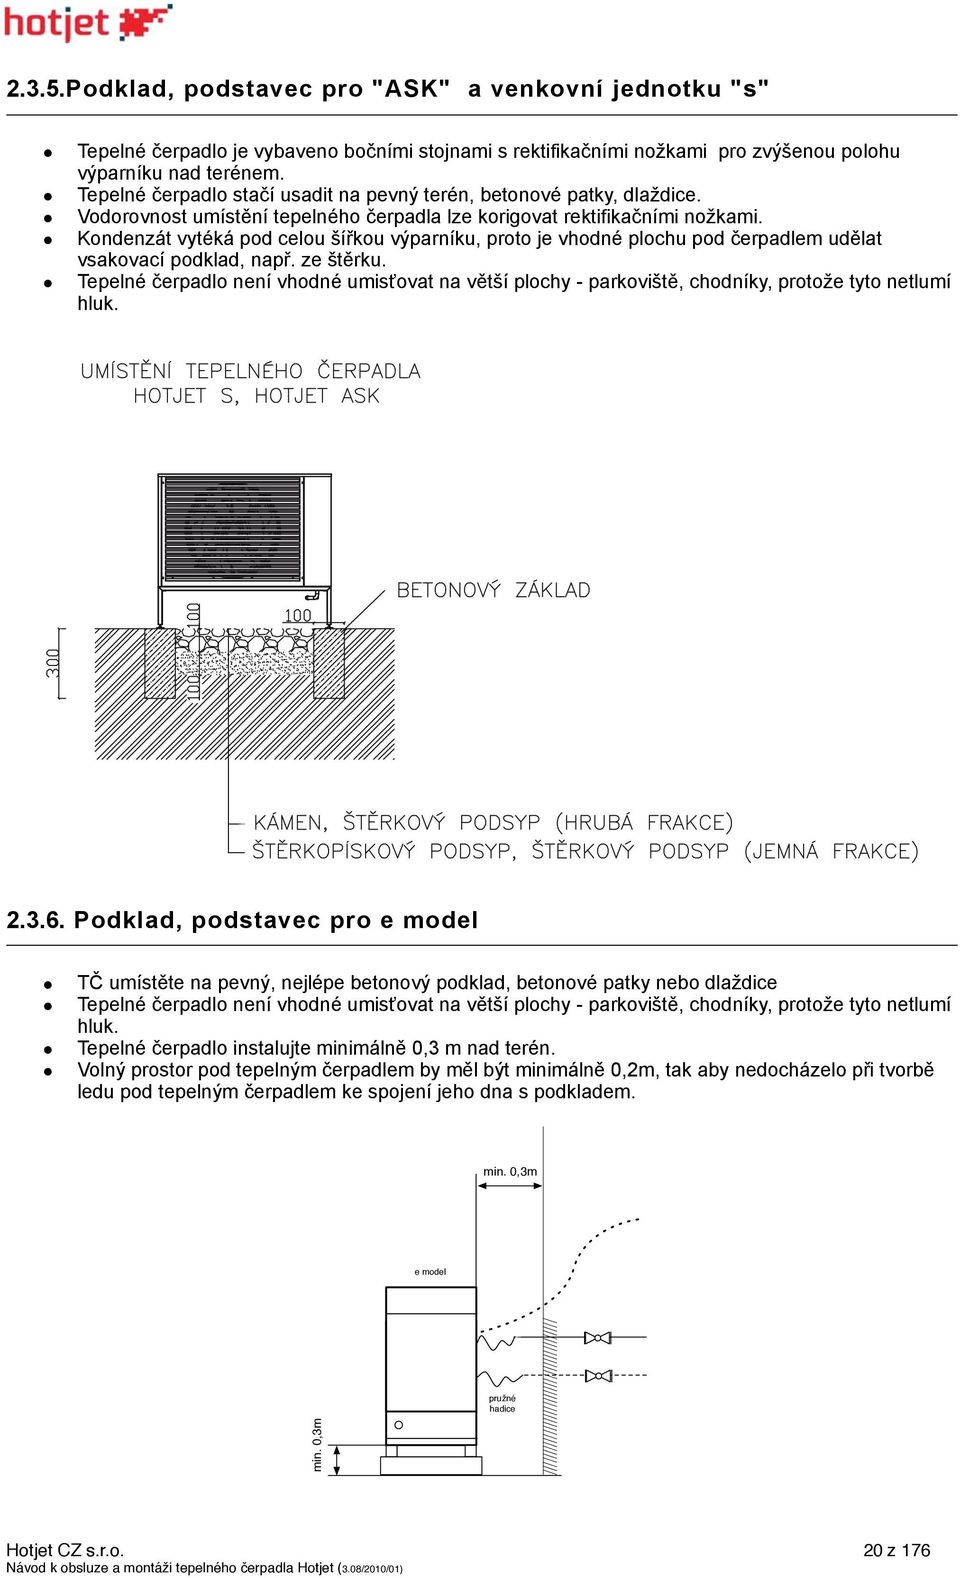 Návod k obsluze a montáži tepelného čerpadla Hotjet - PDF Stažení zdarma